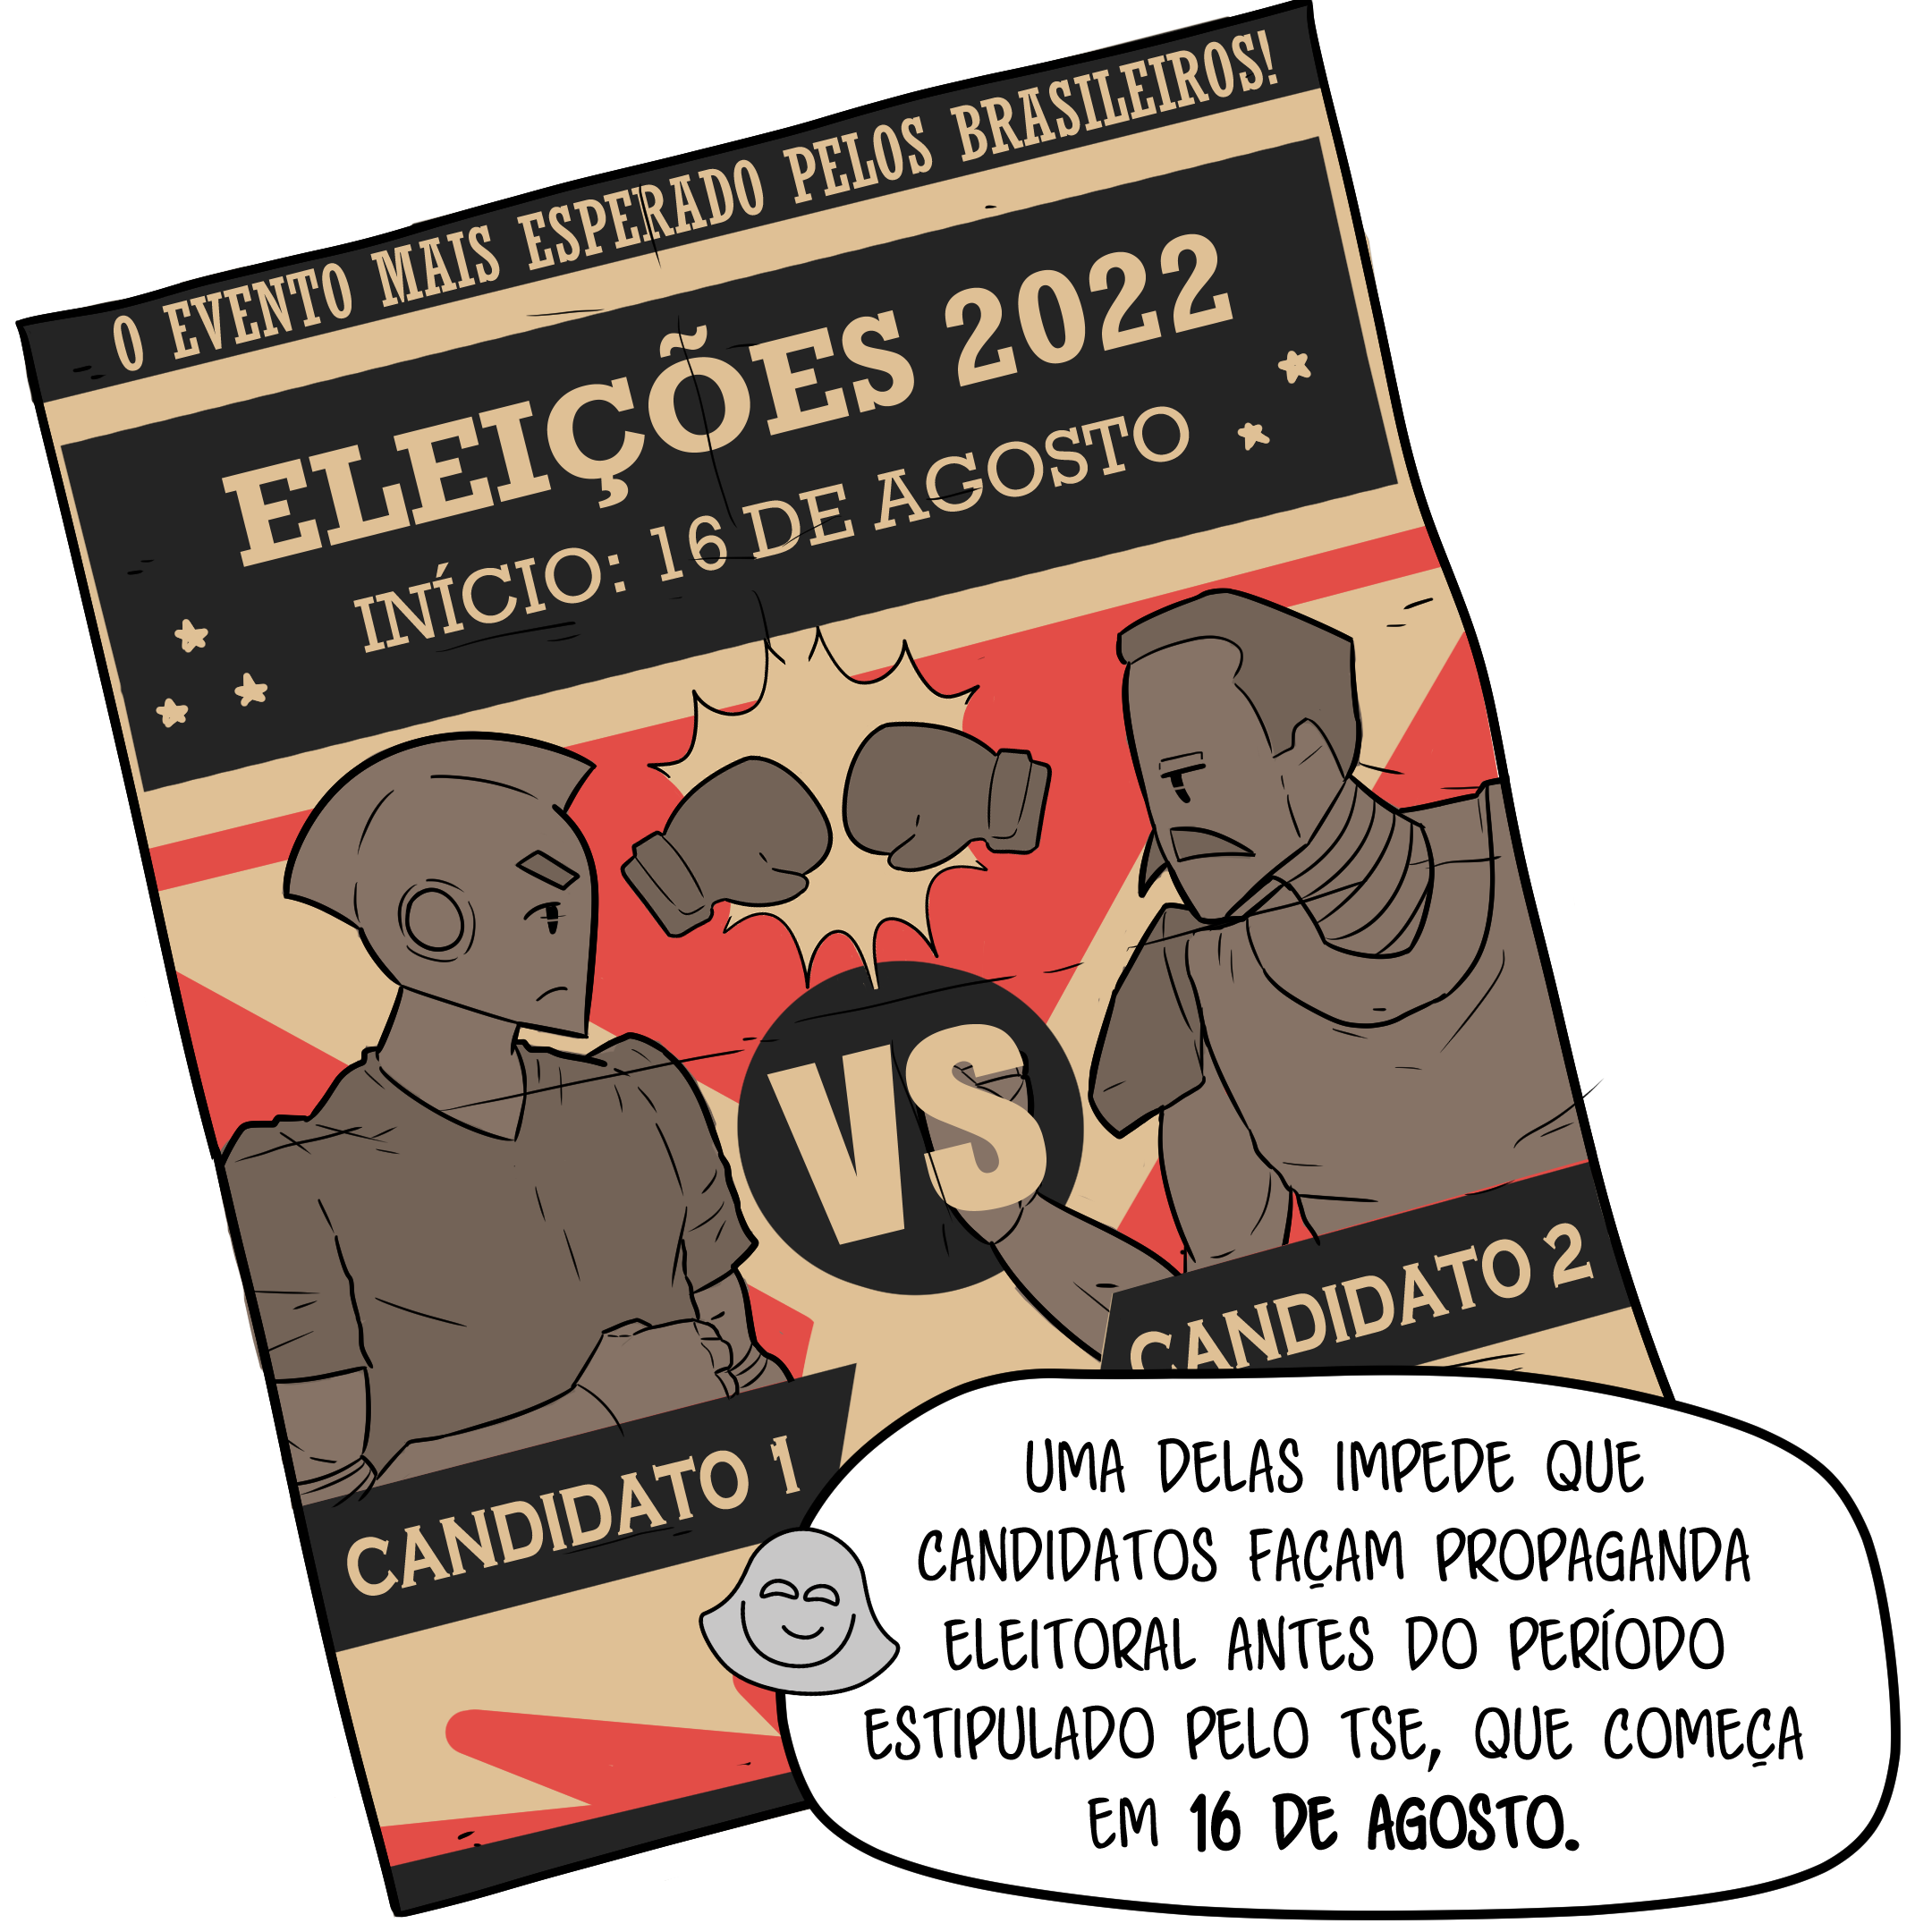 Cartaz anuncia uma luta de boxe e diz que as eleições 2022 são “o evento mais esperado dos brasileiros”. Fátima explica que a lei brasileira impede, por exemplo, que os candidatos façam propaganda antes do período eleitoral, que neste ano começa em 16 de agosto.